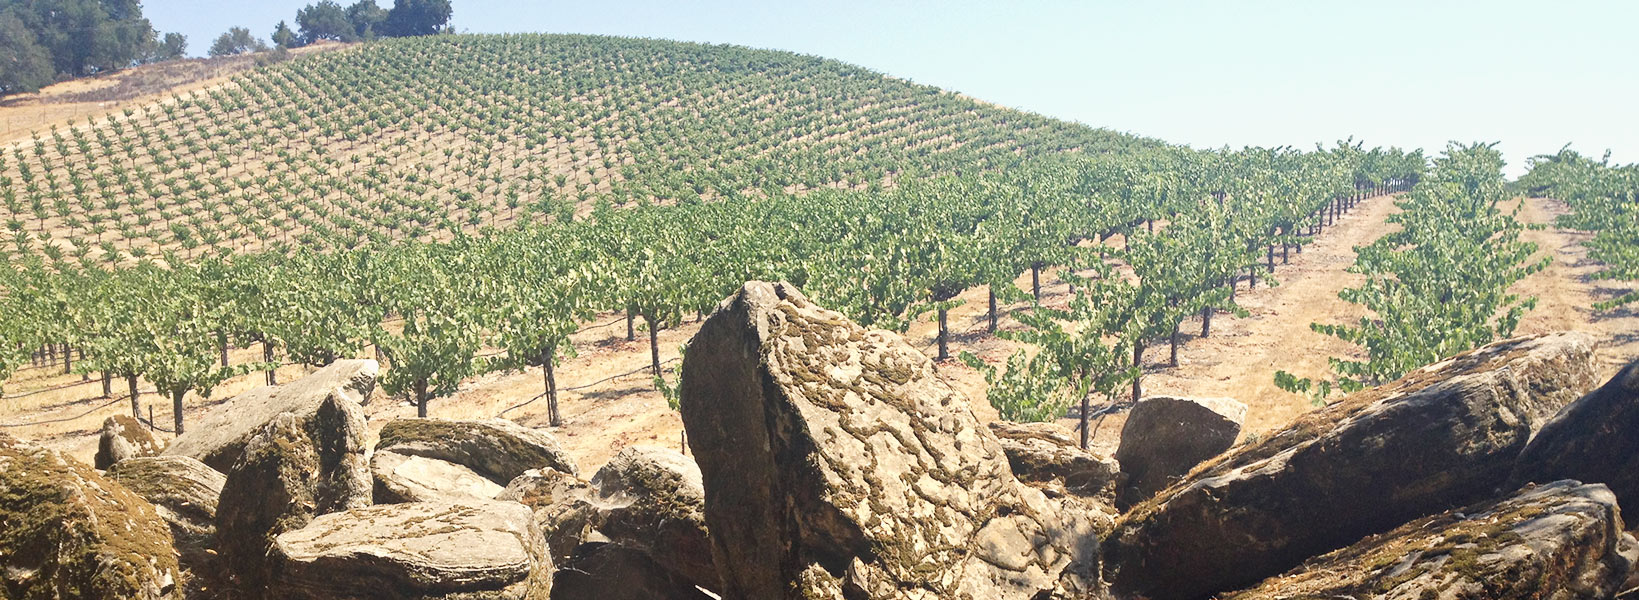 Turtle Rock Vineyard